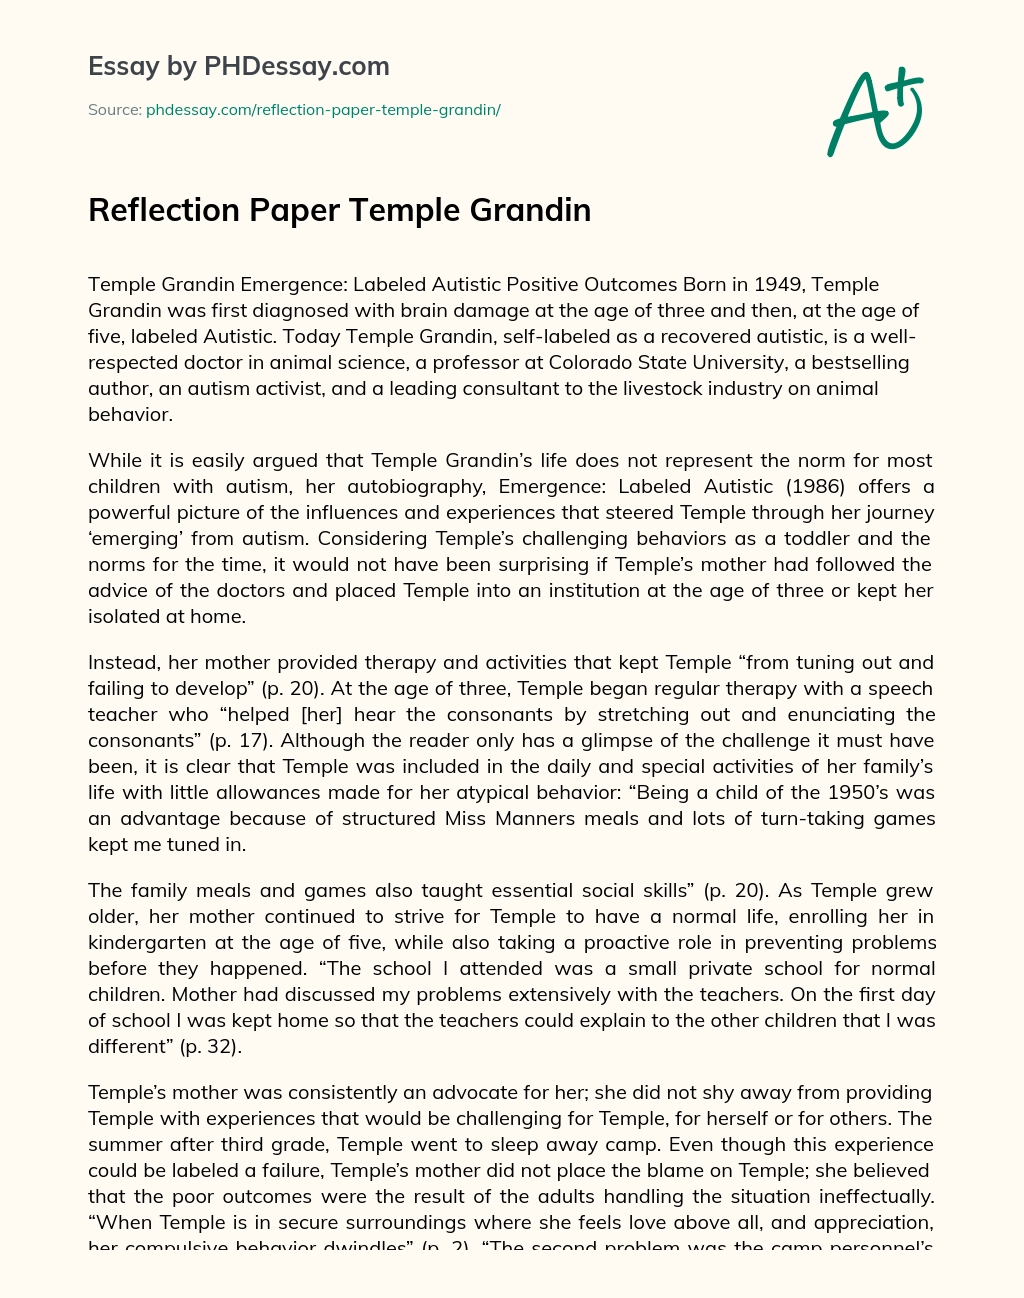 Reflection Paper Temple Grandin essay